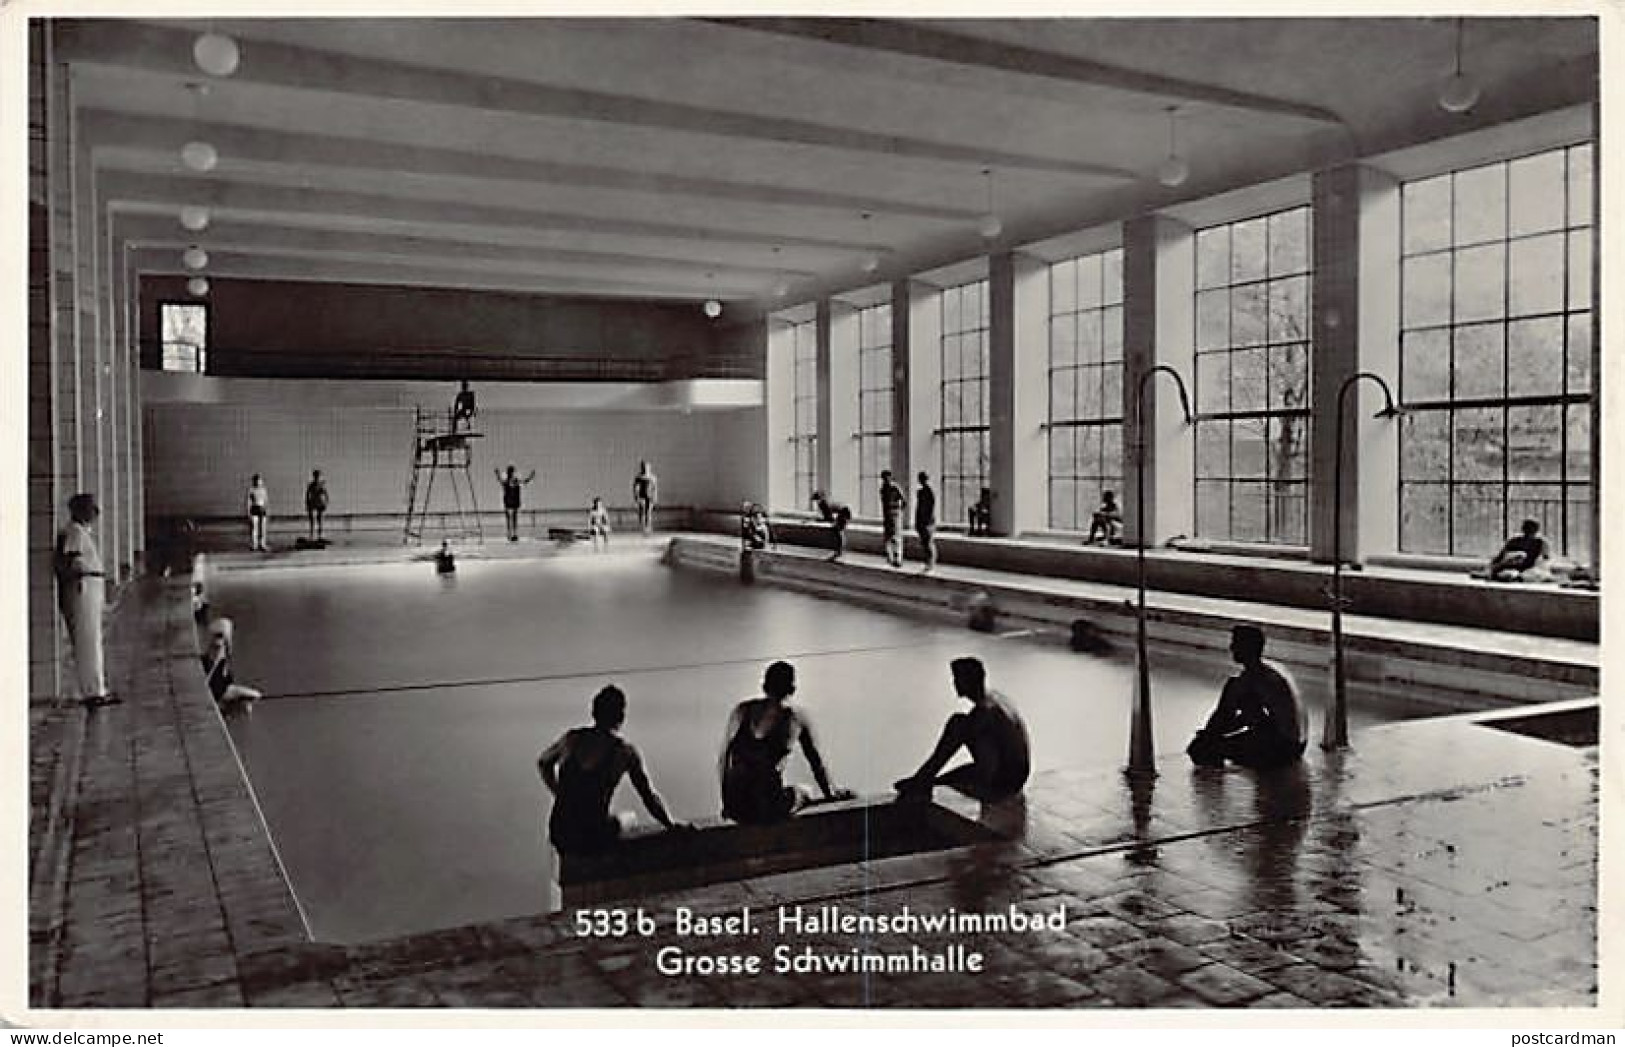 BASEL - Hallenschwimmbad - Grosse Schwimmhalle - Verlag Xaver Frey 533b - Bâle